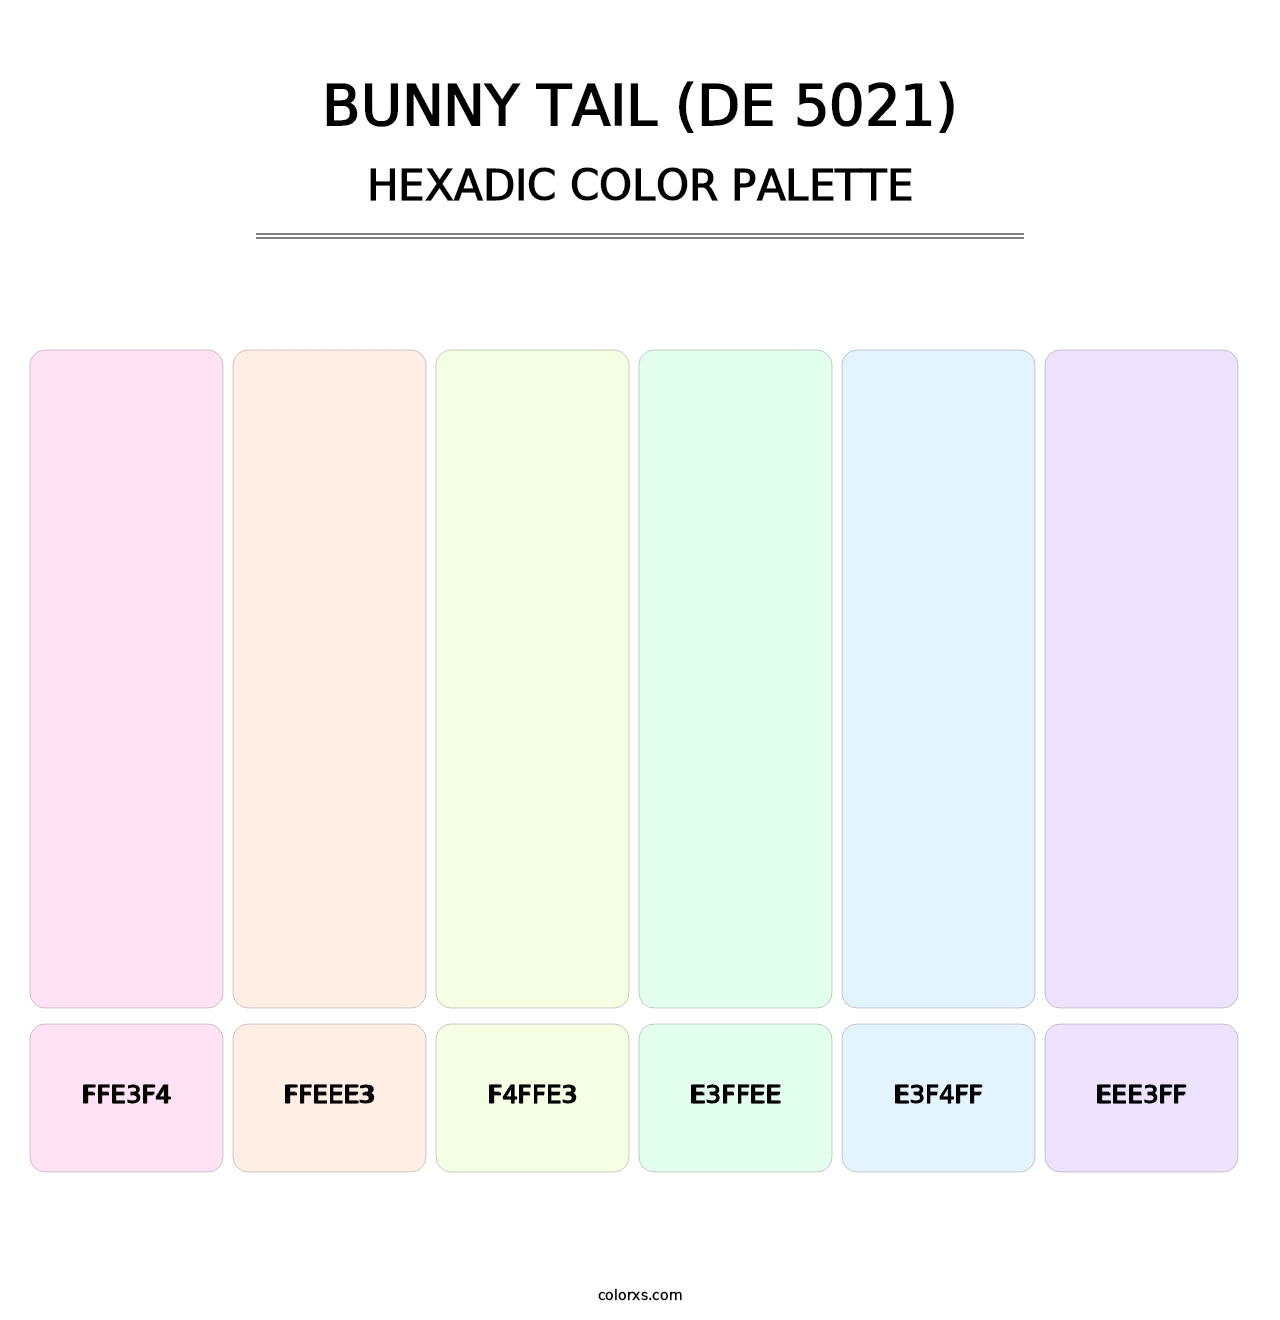 Bunny Tail (DE 5021) - Hexadic Color Palette